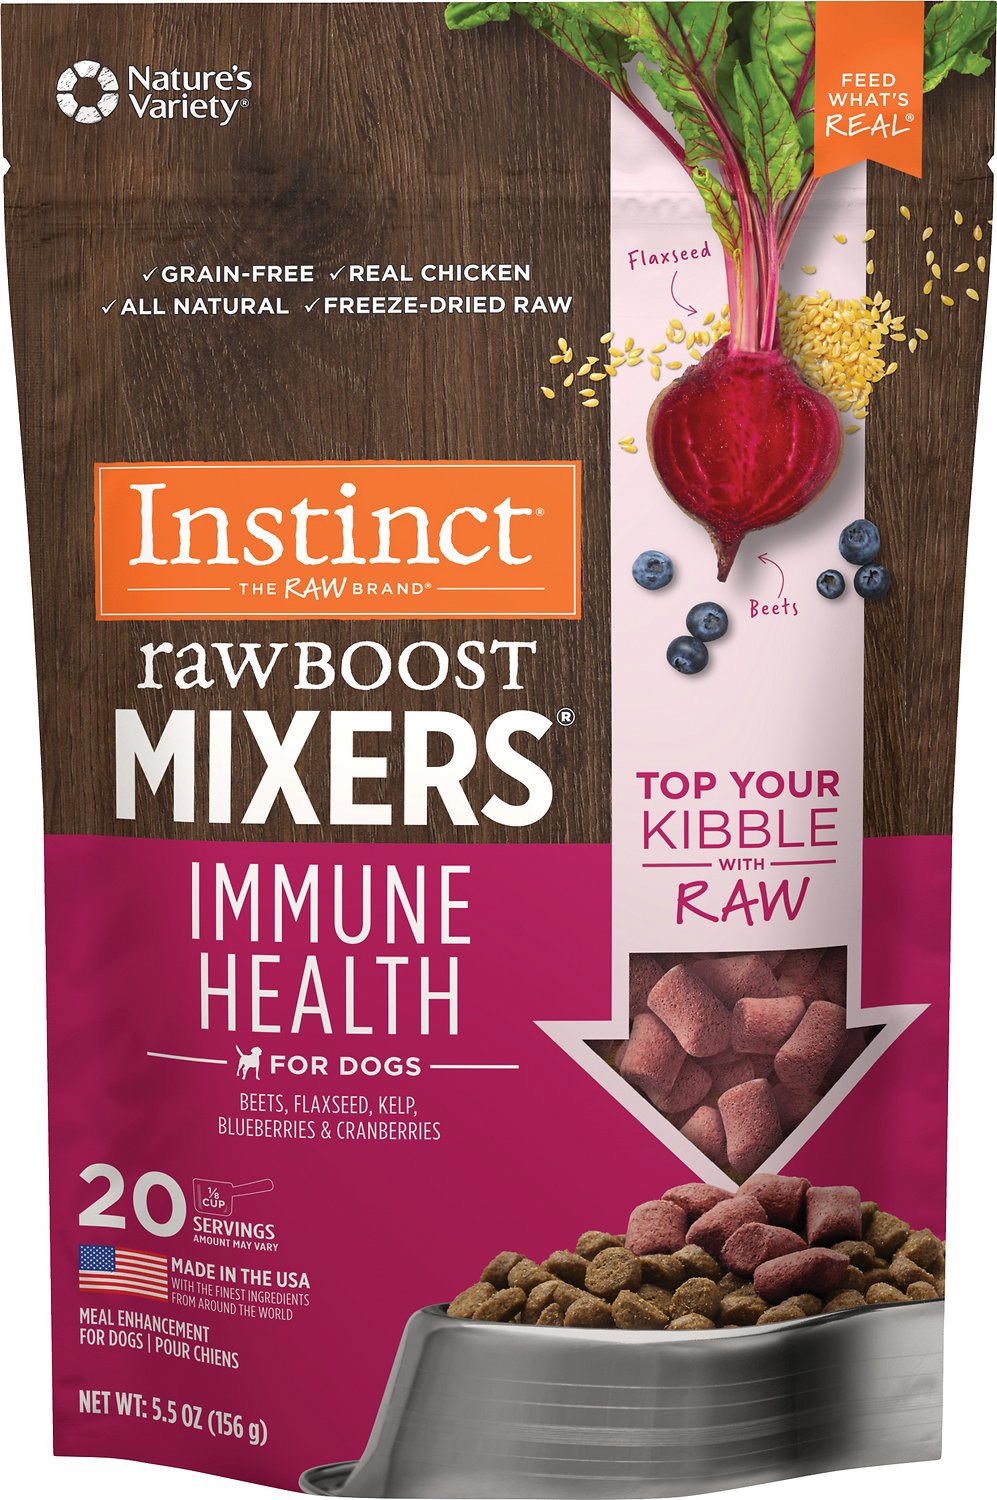 อาหารสุนัข Instinct Raw Boost Mixers สูตร Immune Health ทอปปิ้งอาหารสุนัข ขนาด 156 g